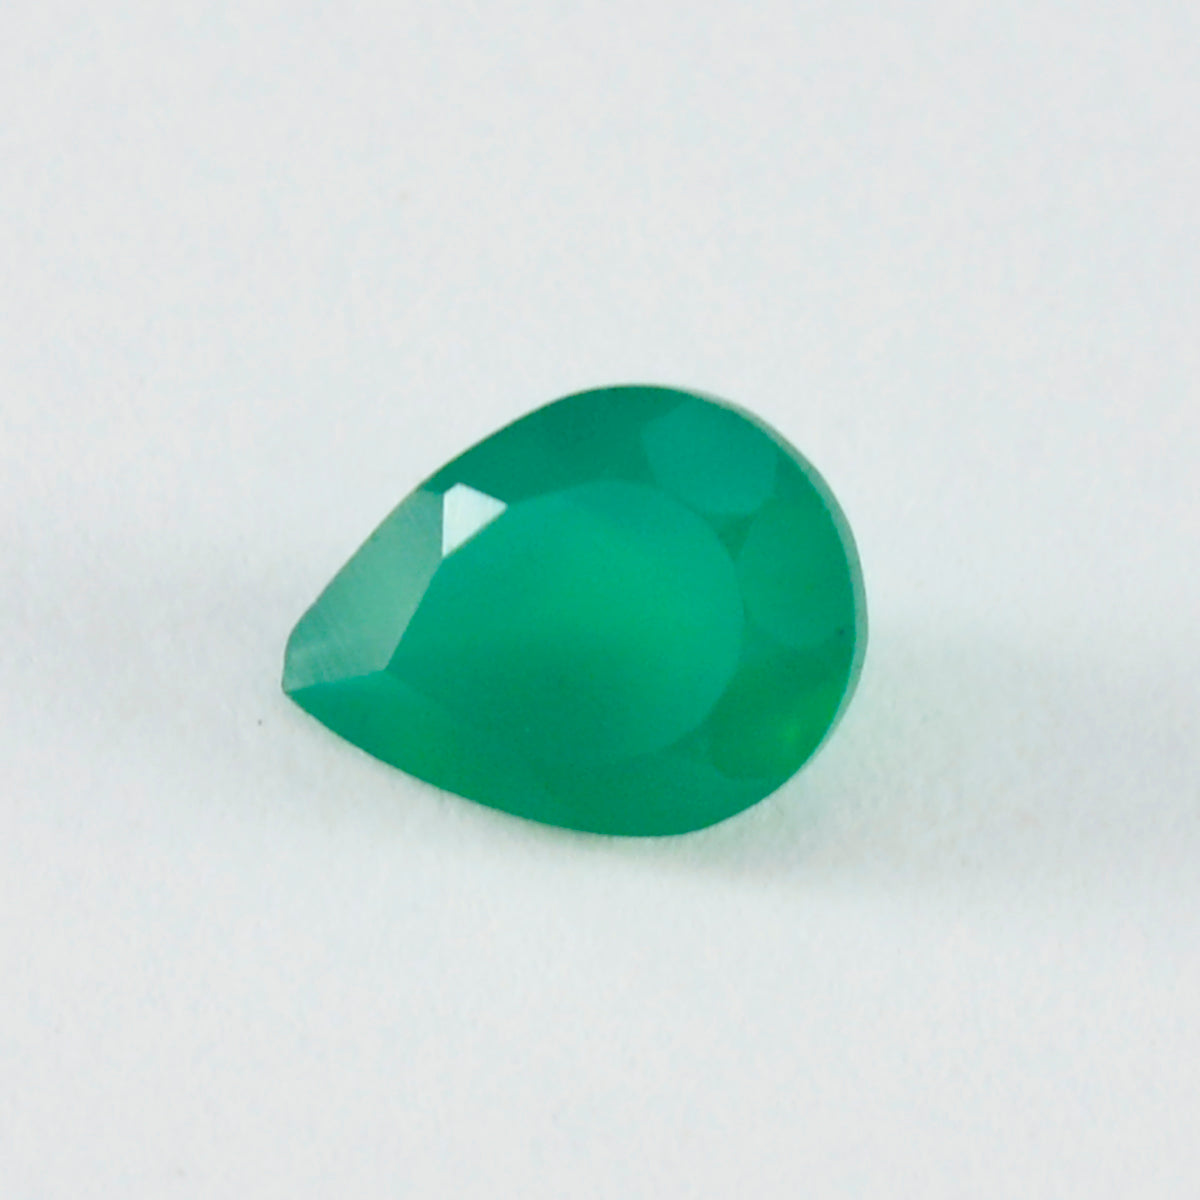 Riyogems 1 pieza de ónix verde auténtico facetado de 3x3 mm, forma redonda, piedra suelta de calidad A+